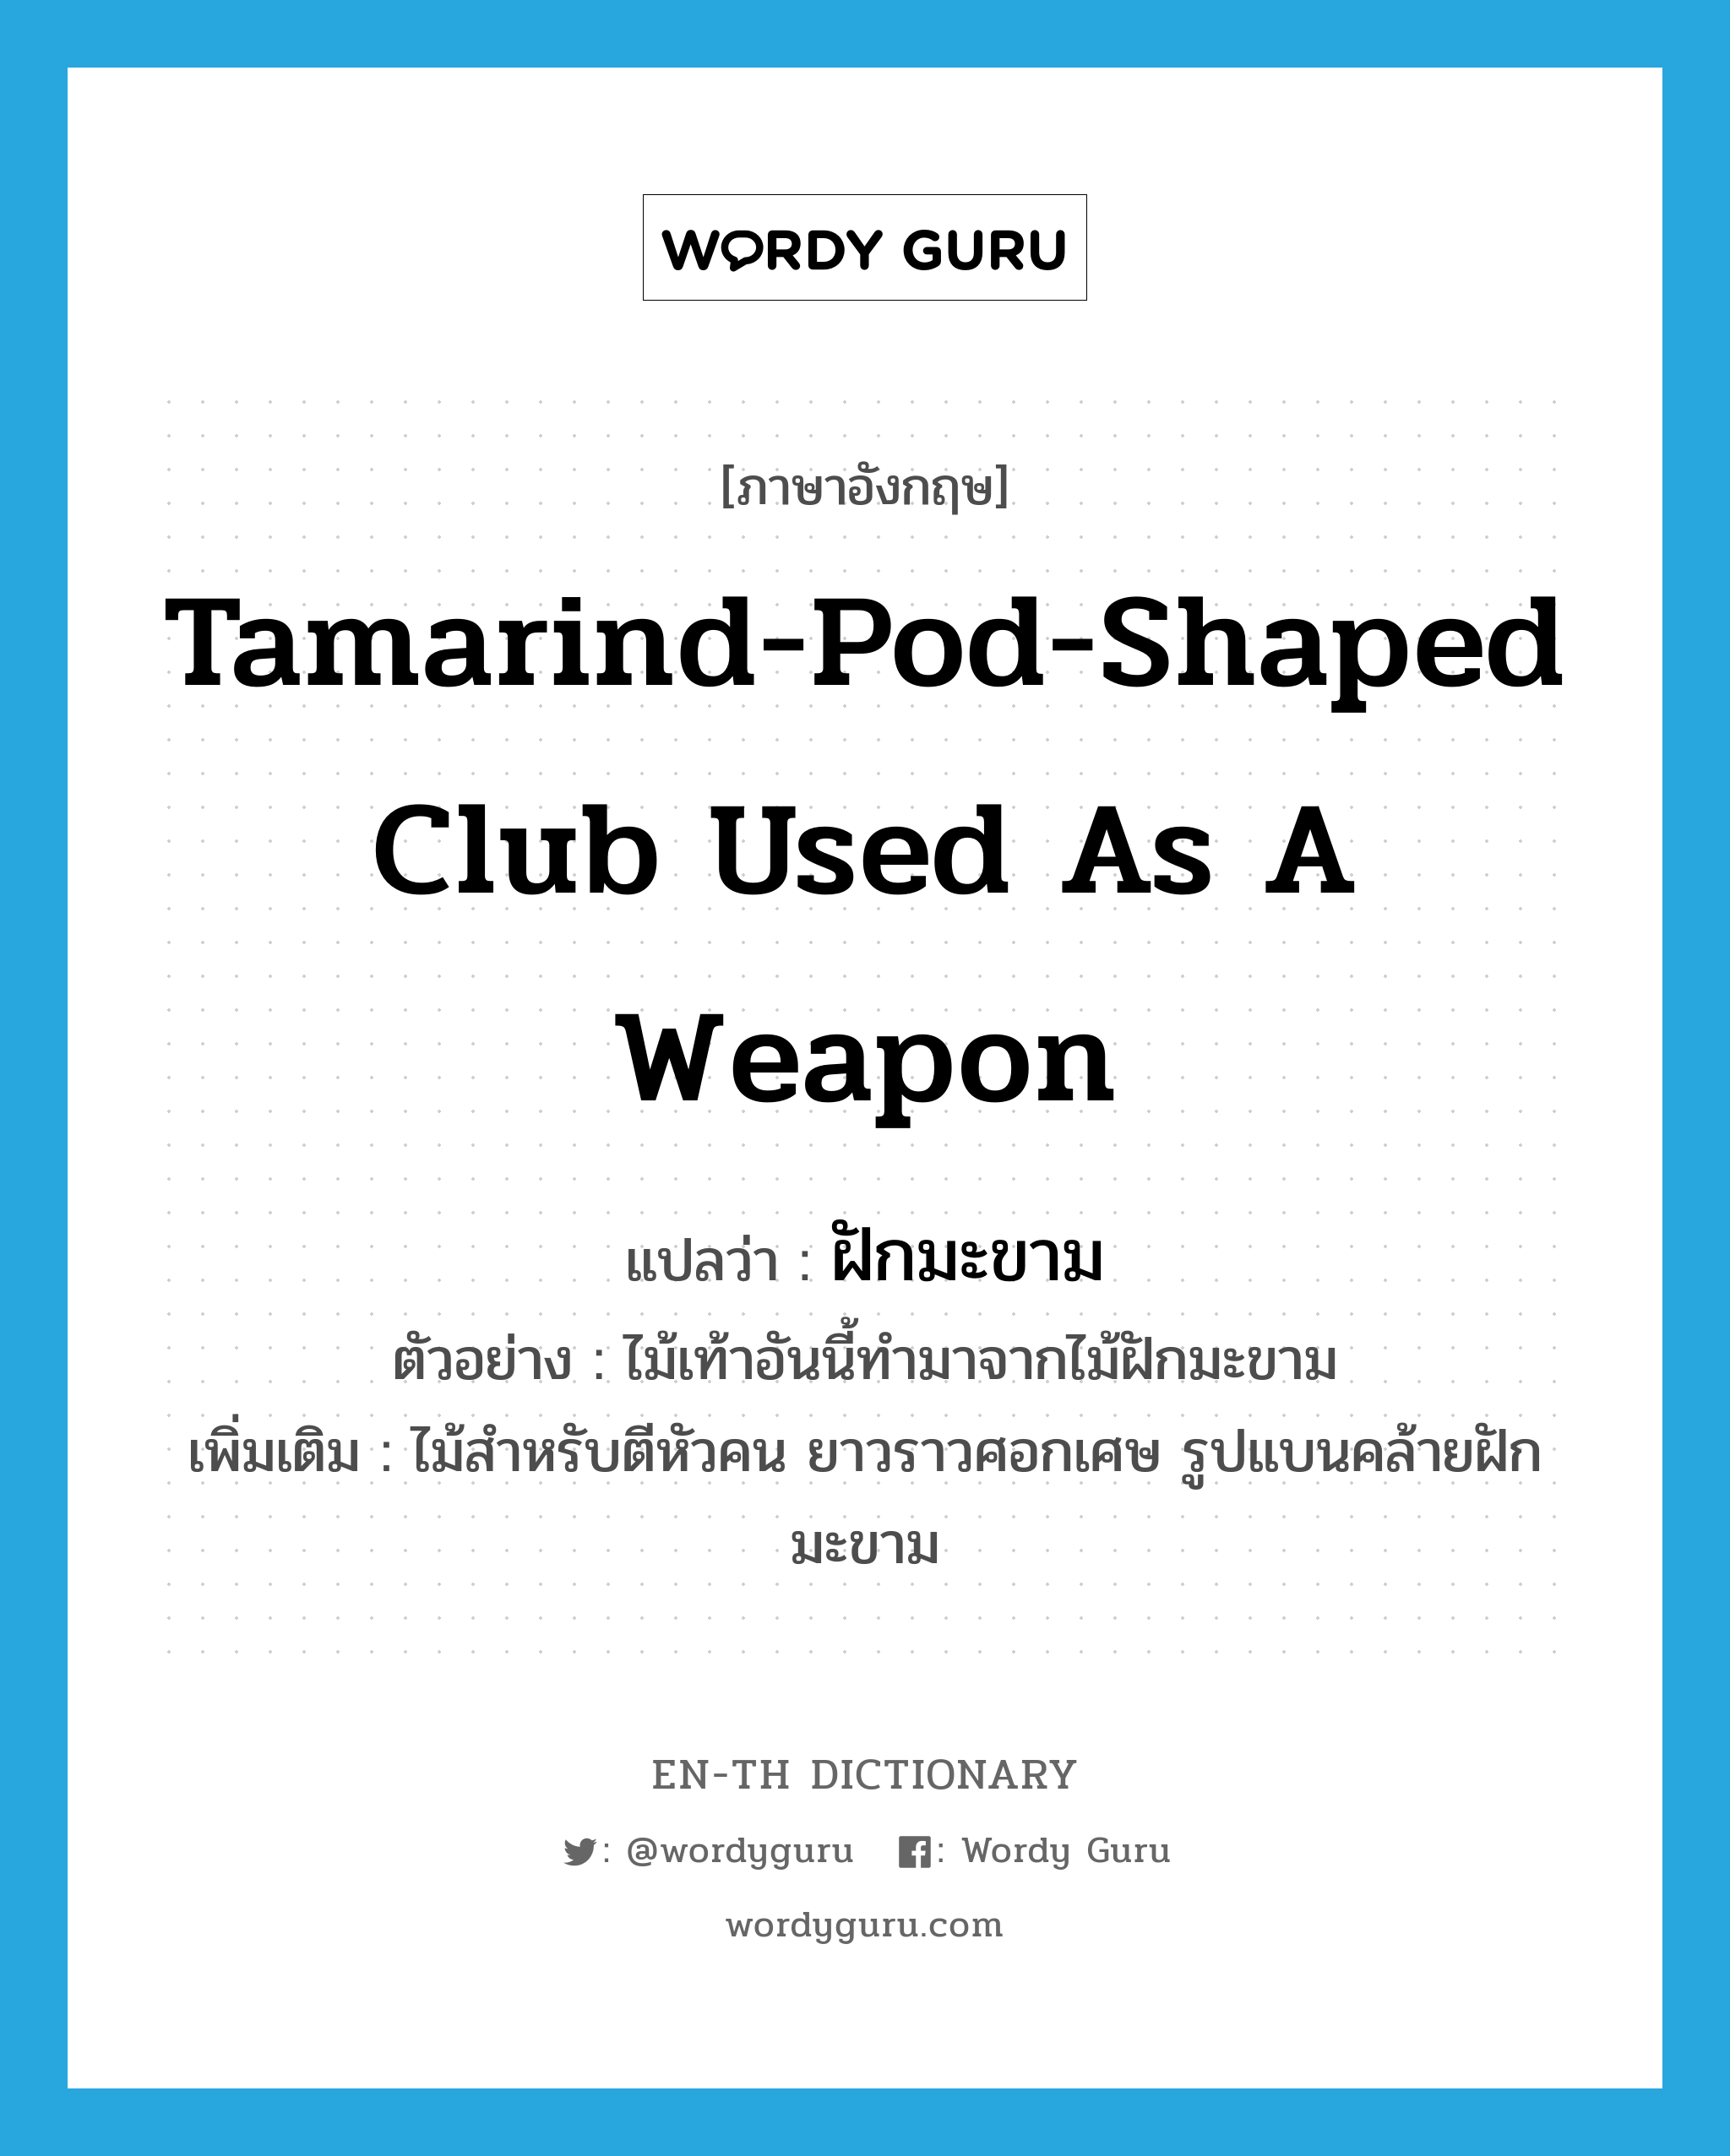 tamarind-pod-shaped club used as a weapon แปลว่า?, คำศัพท์ภาษาอังกฤษ tamarind-pod-shaped club used as a weapon แปลว่า ฝักมะขาม ประเภท N ตัวอย่าง ไม้เท้าอันนี้ทำมาจากไม้ฝักมะขาม เพิ่มเติม ไม้สำหรับตีหัวคน ยาวราวศอกเศษ รูปแบนคล้ายฝักมะขาม หมวด N